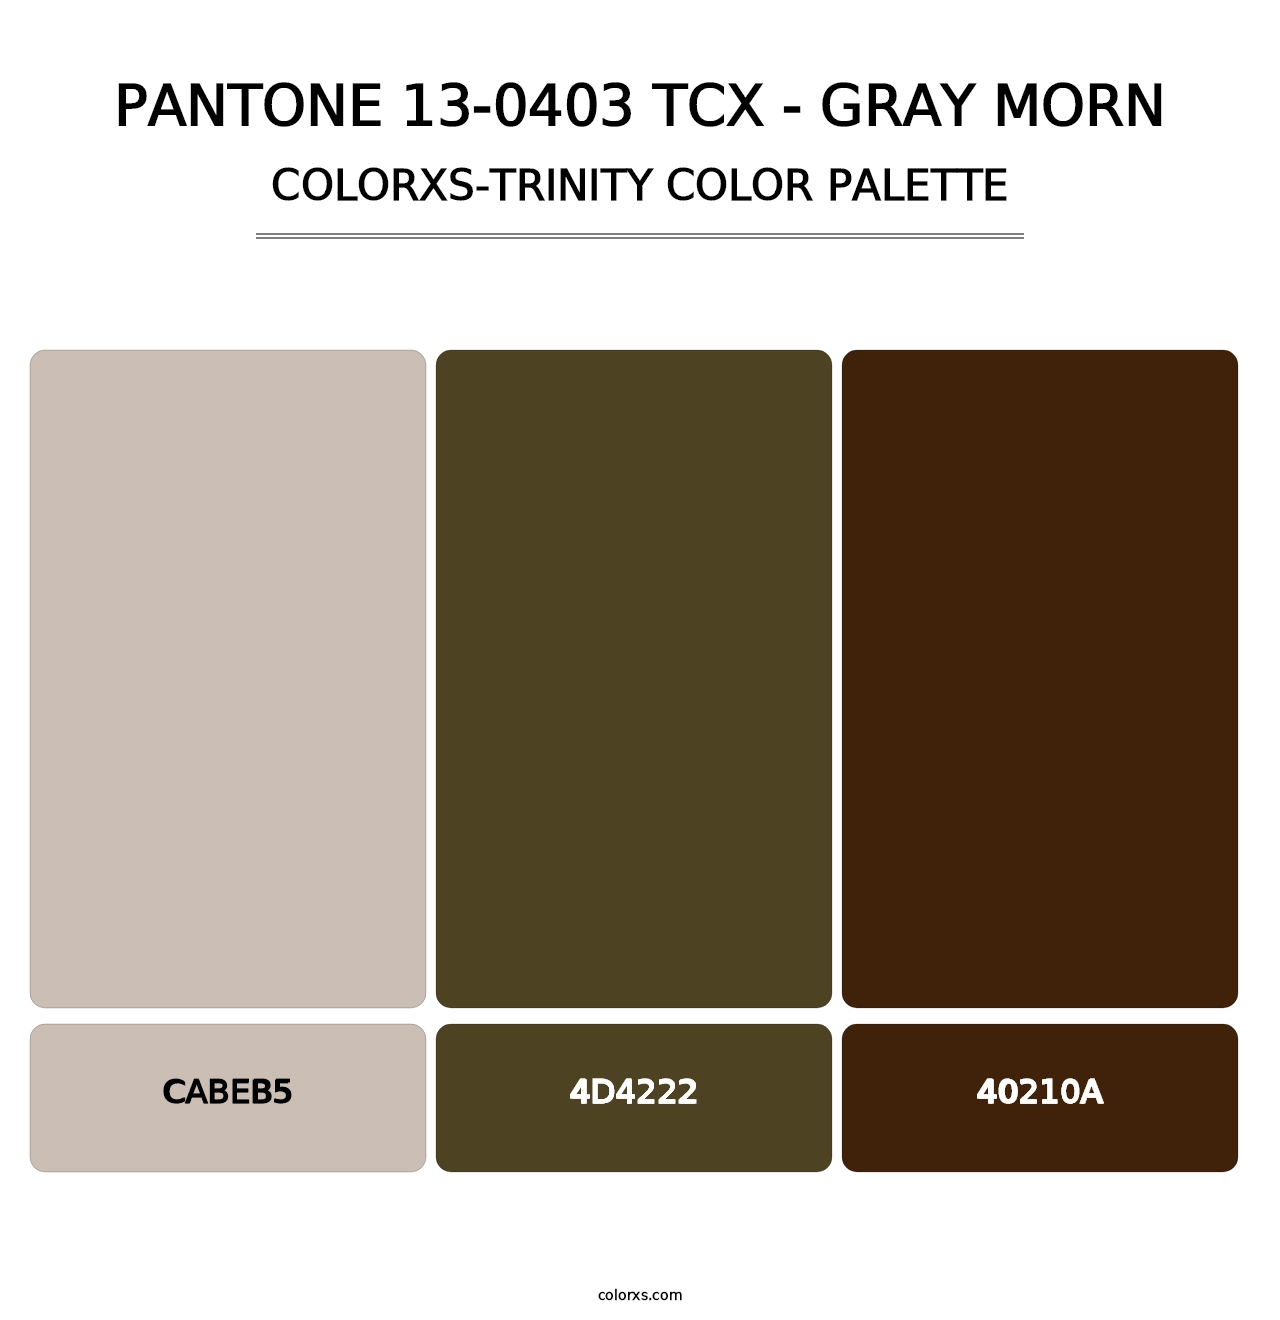 PANTONE 13-0403 TCX - Gray Morn - Colorxs Trinity Palette